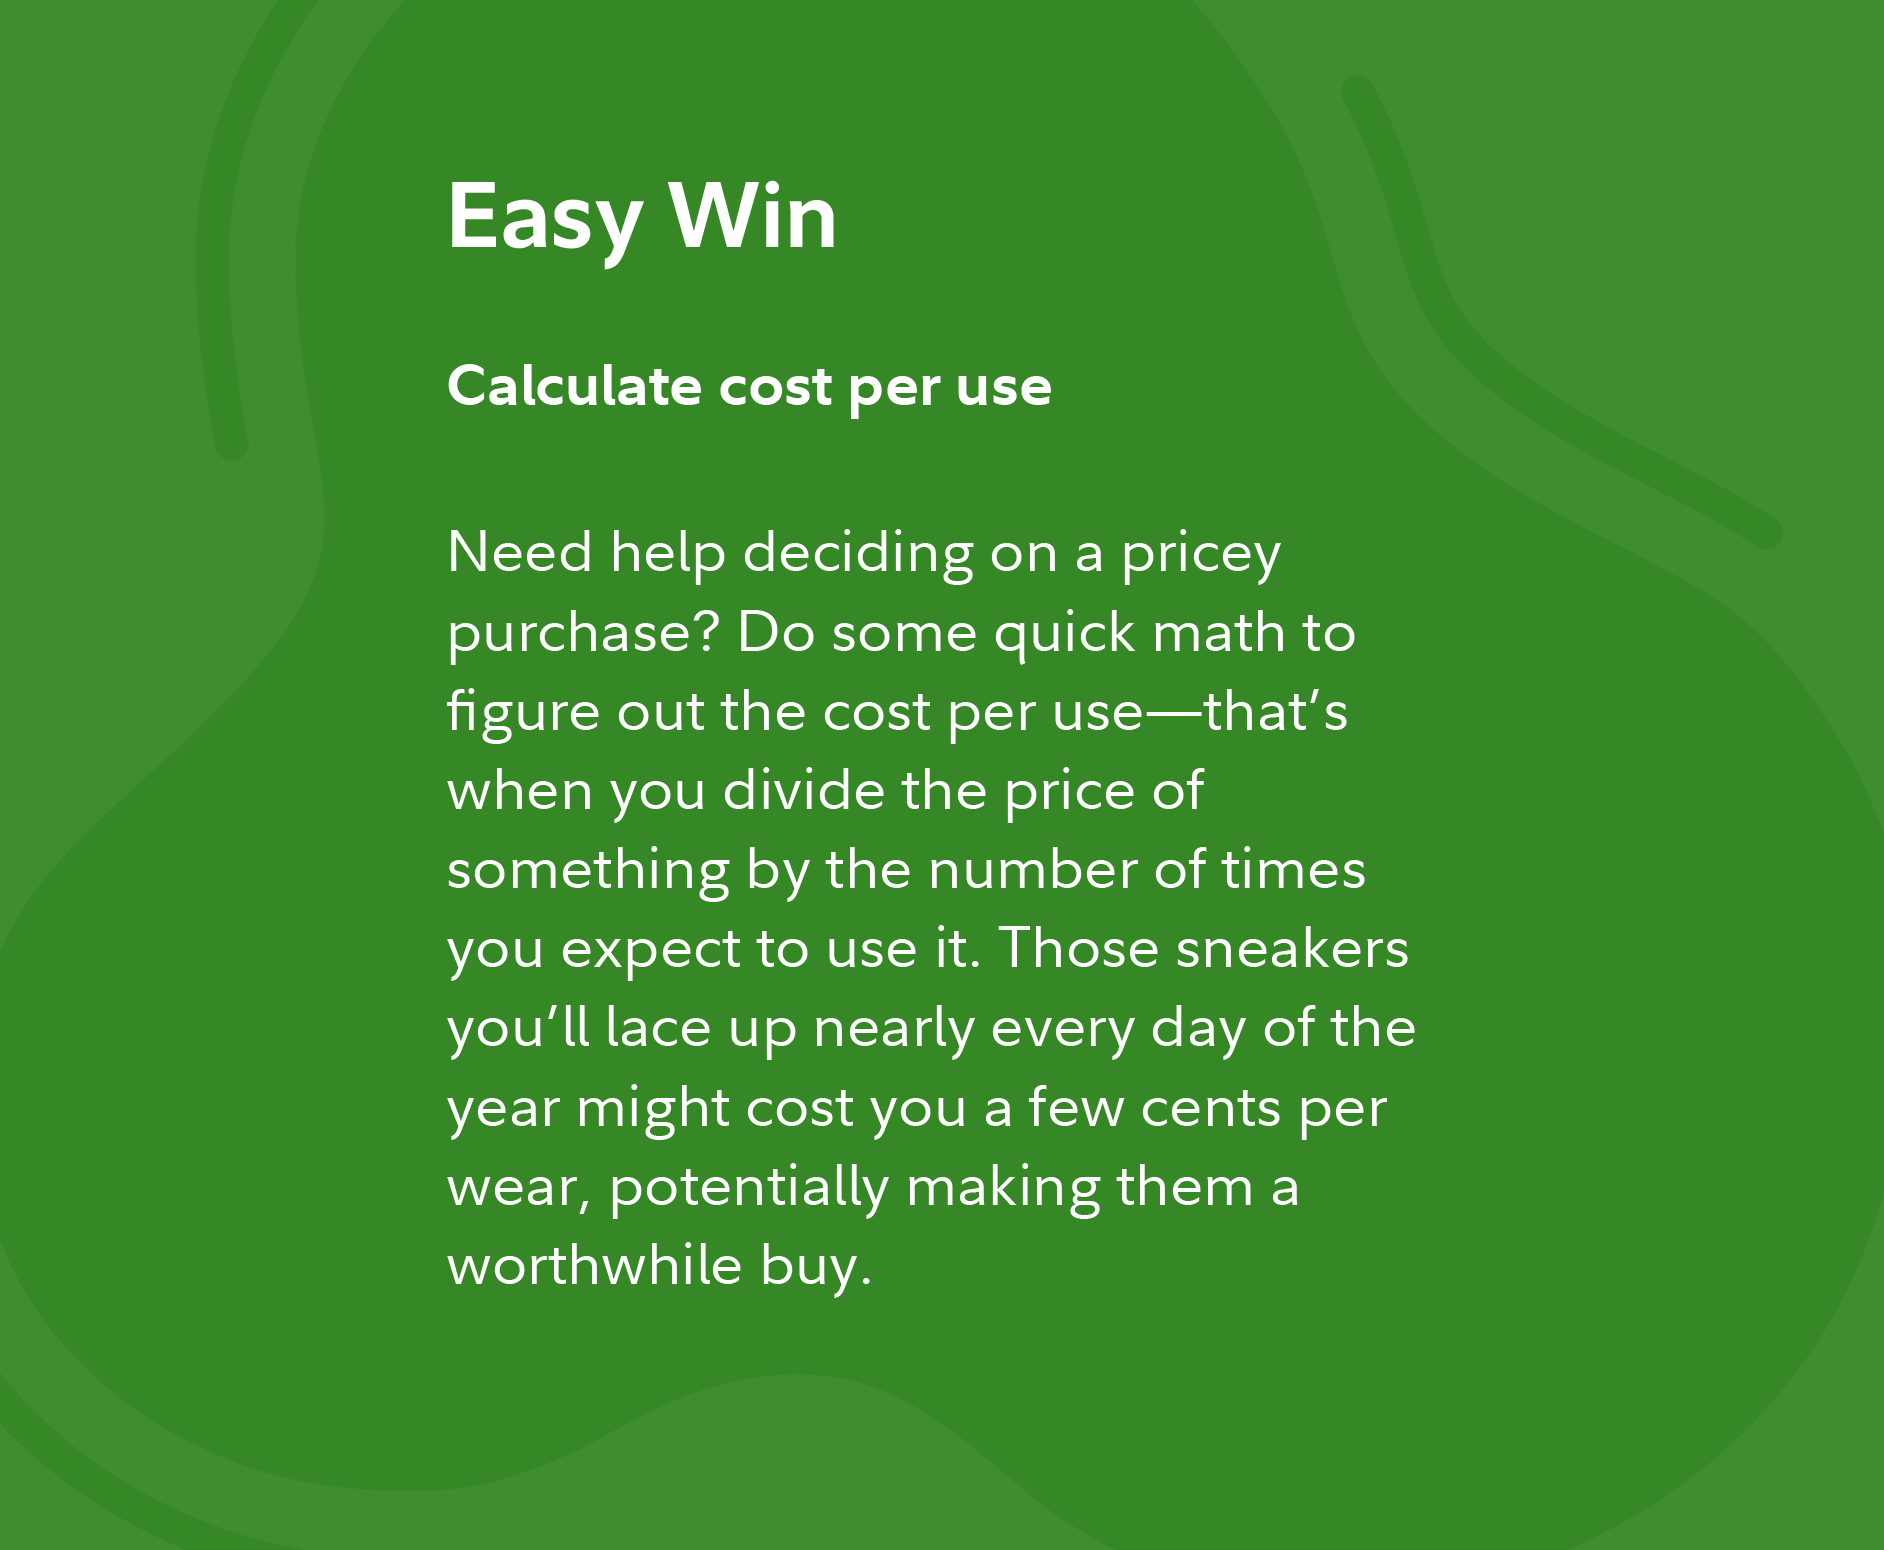 easy-win-sm_calculate-cost-per-use